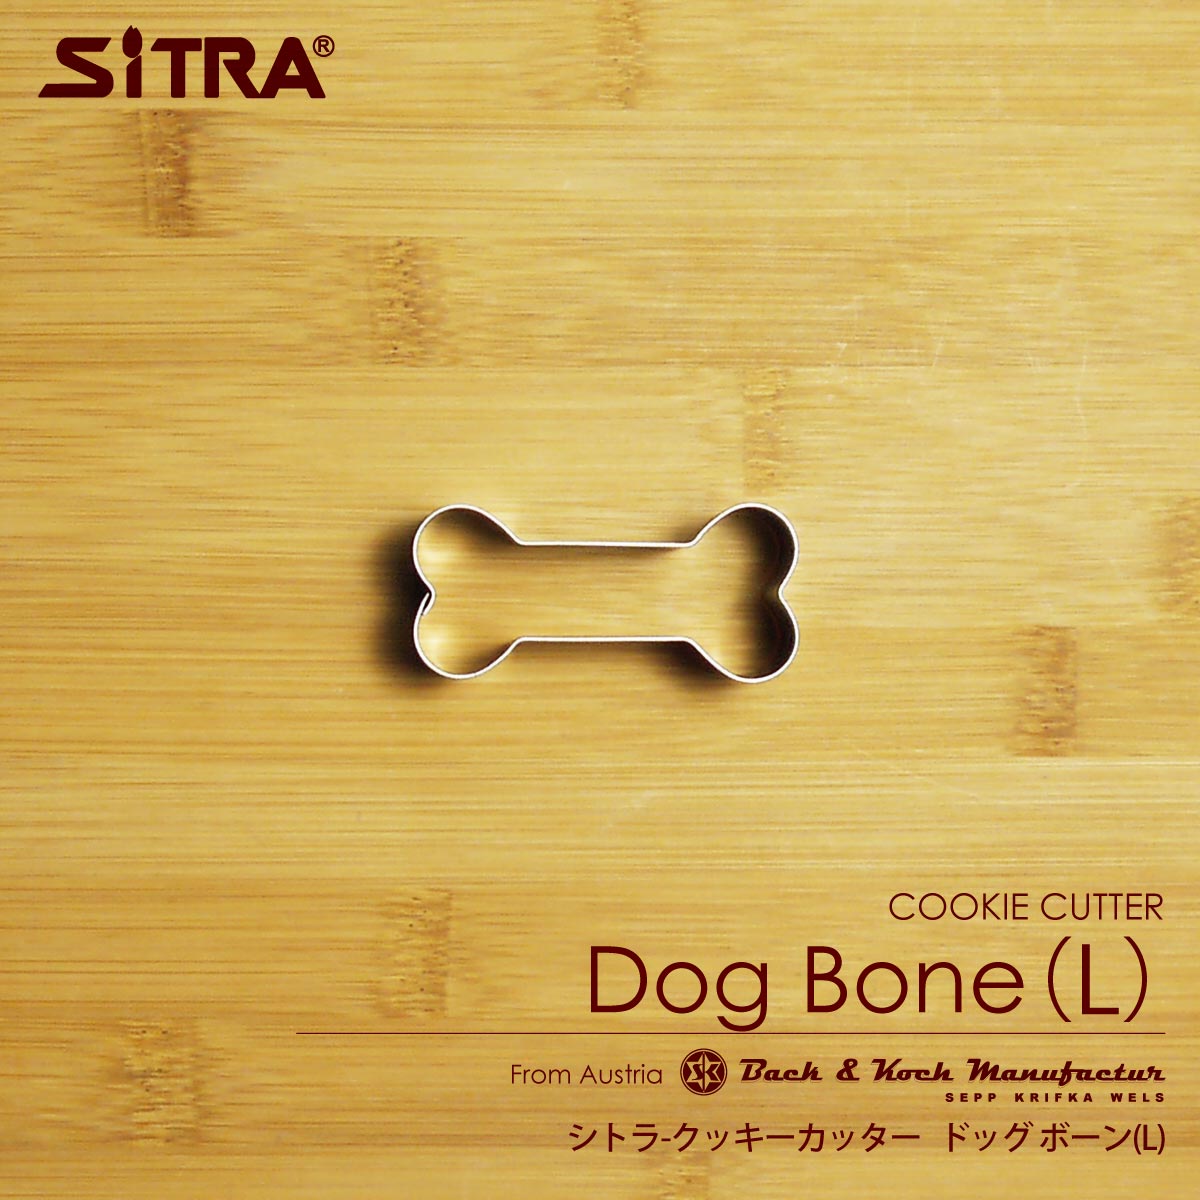 クッキー型 動物 犬「 ドッグボーン L（6cm) 」 犬の骨 ステンレス ヨーロッパで 人気 の おしゃれ で かわいい 珍しい 形を取り寄せました 手作りクッキー プレゼントに！ SiTRA シトラ 犬好き さん に おすすめ の 犬グッズ